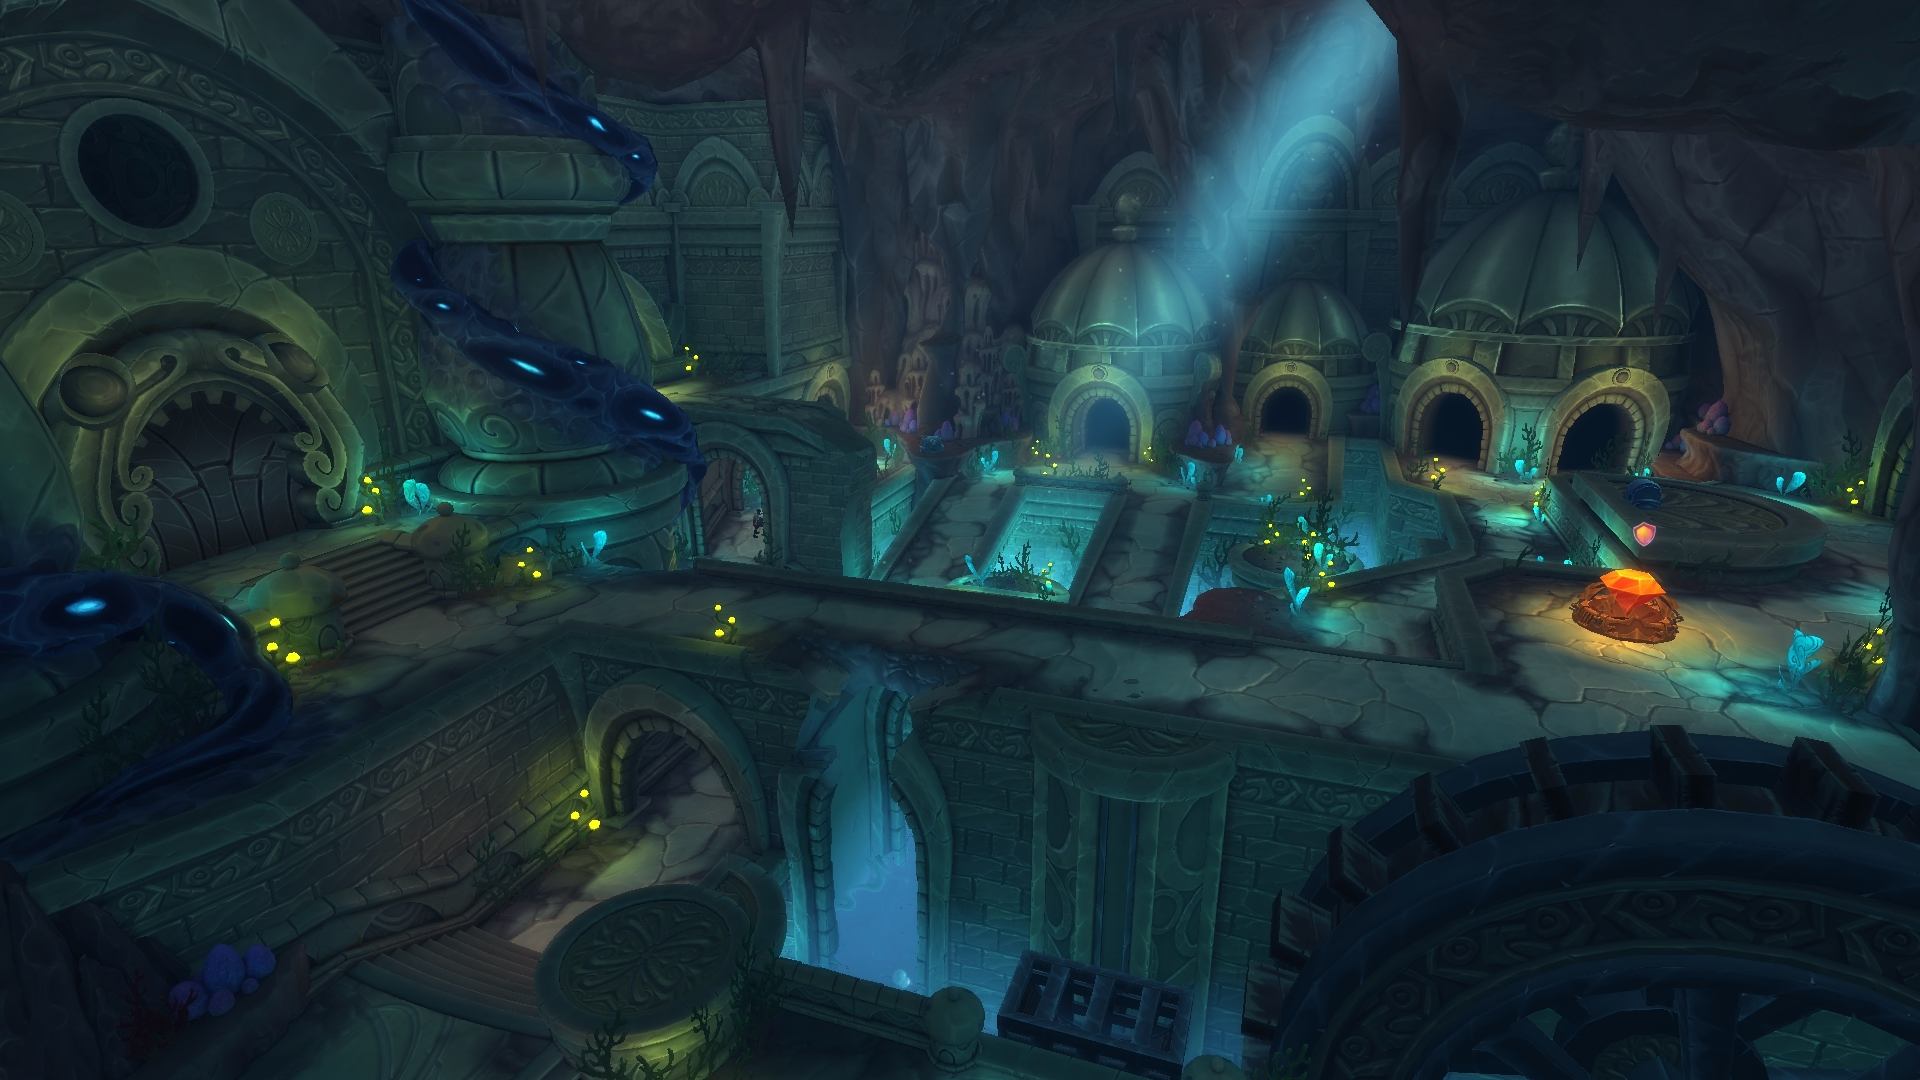 Dungeon Defenders II Screenshot